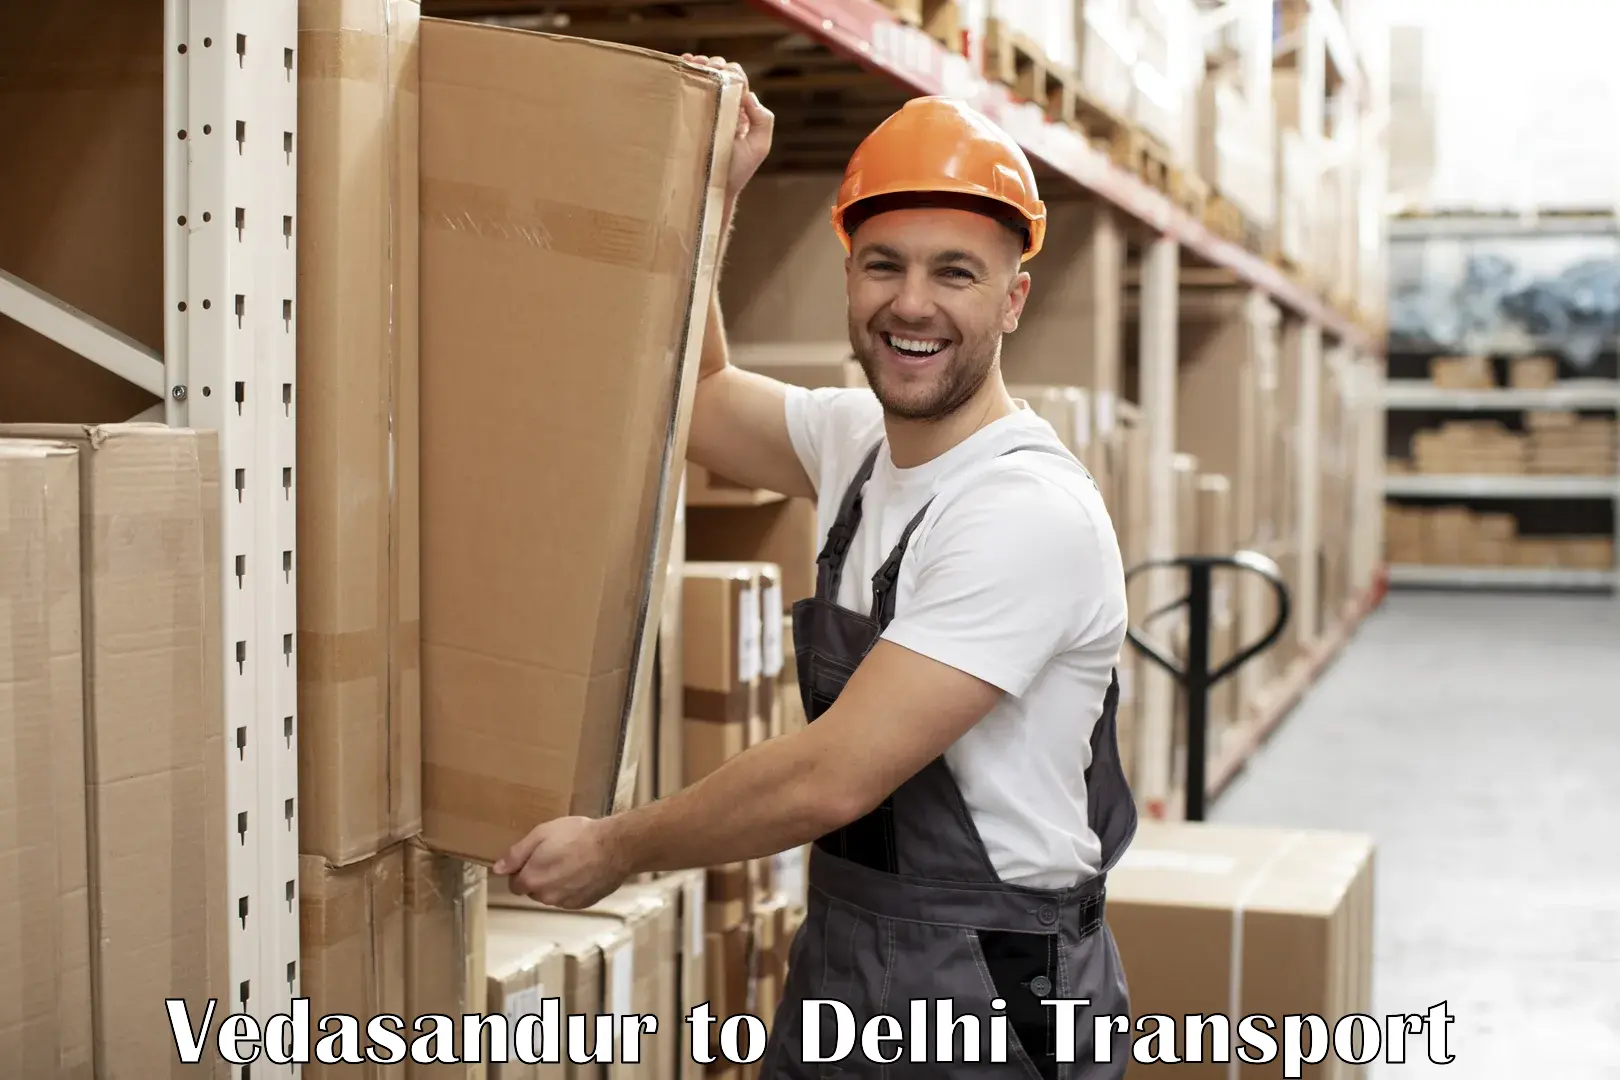 Road transport services Vedasandur to IIT Delhi